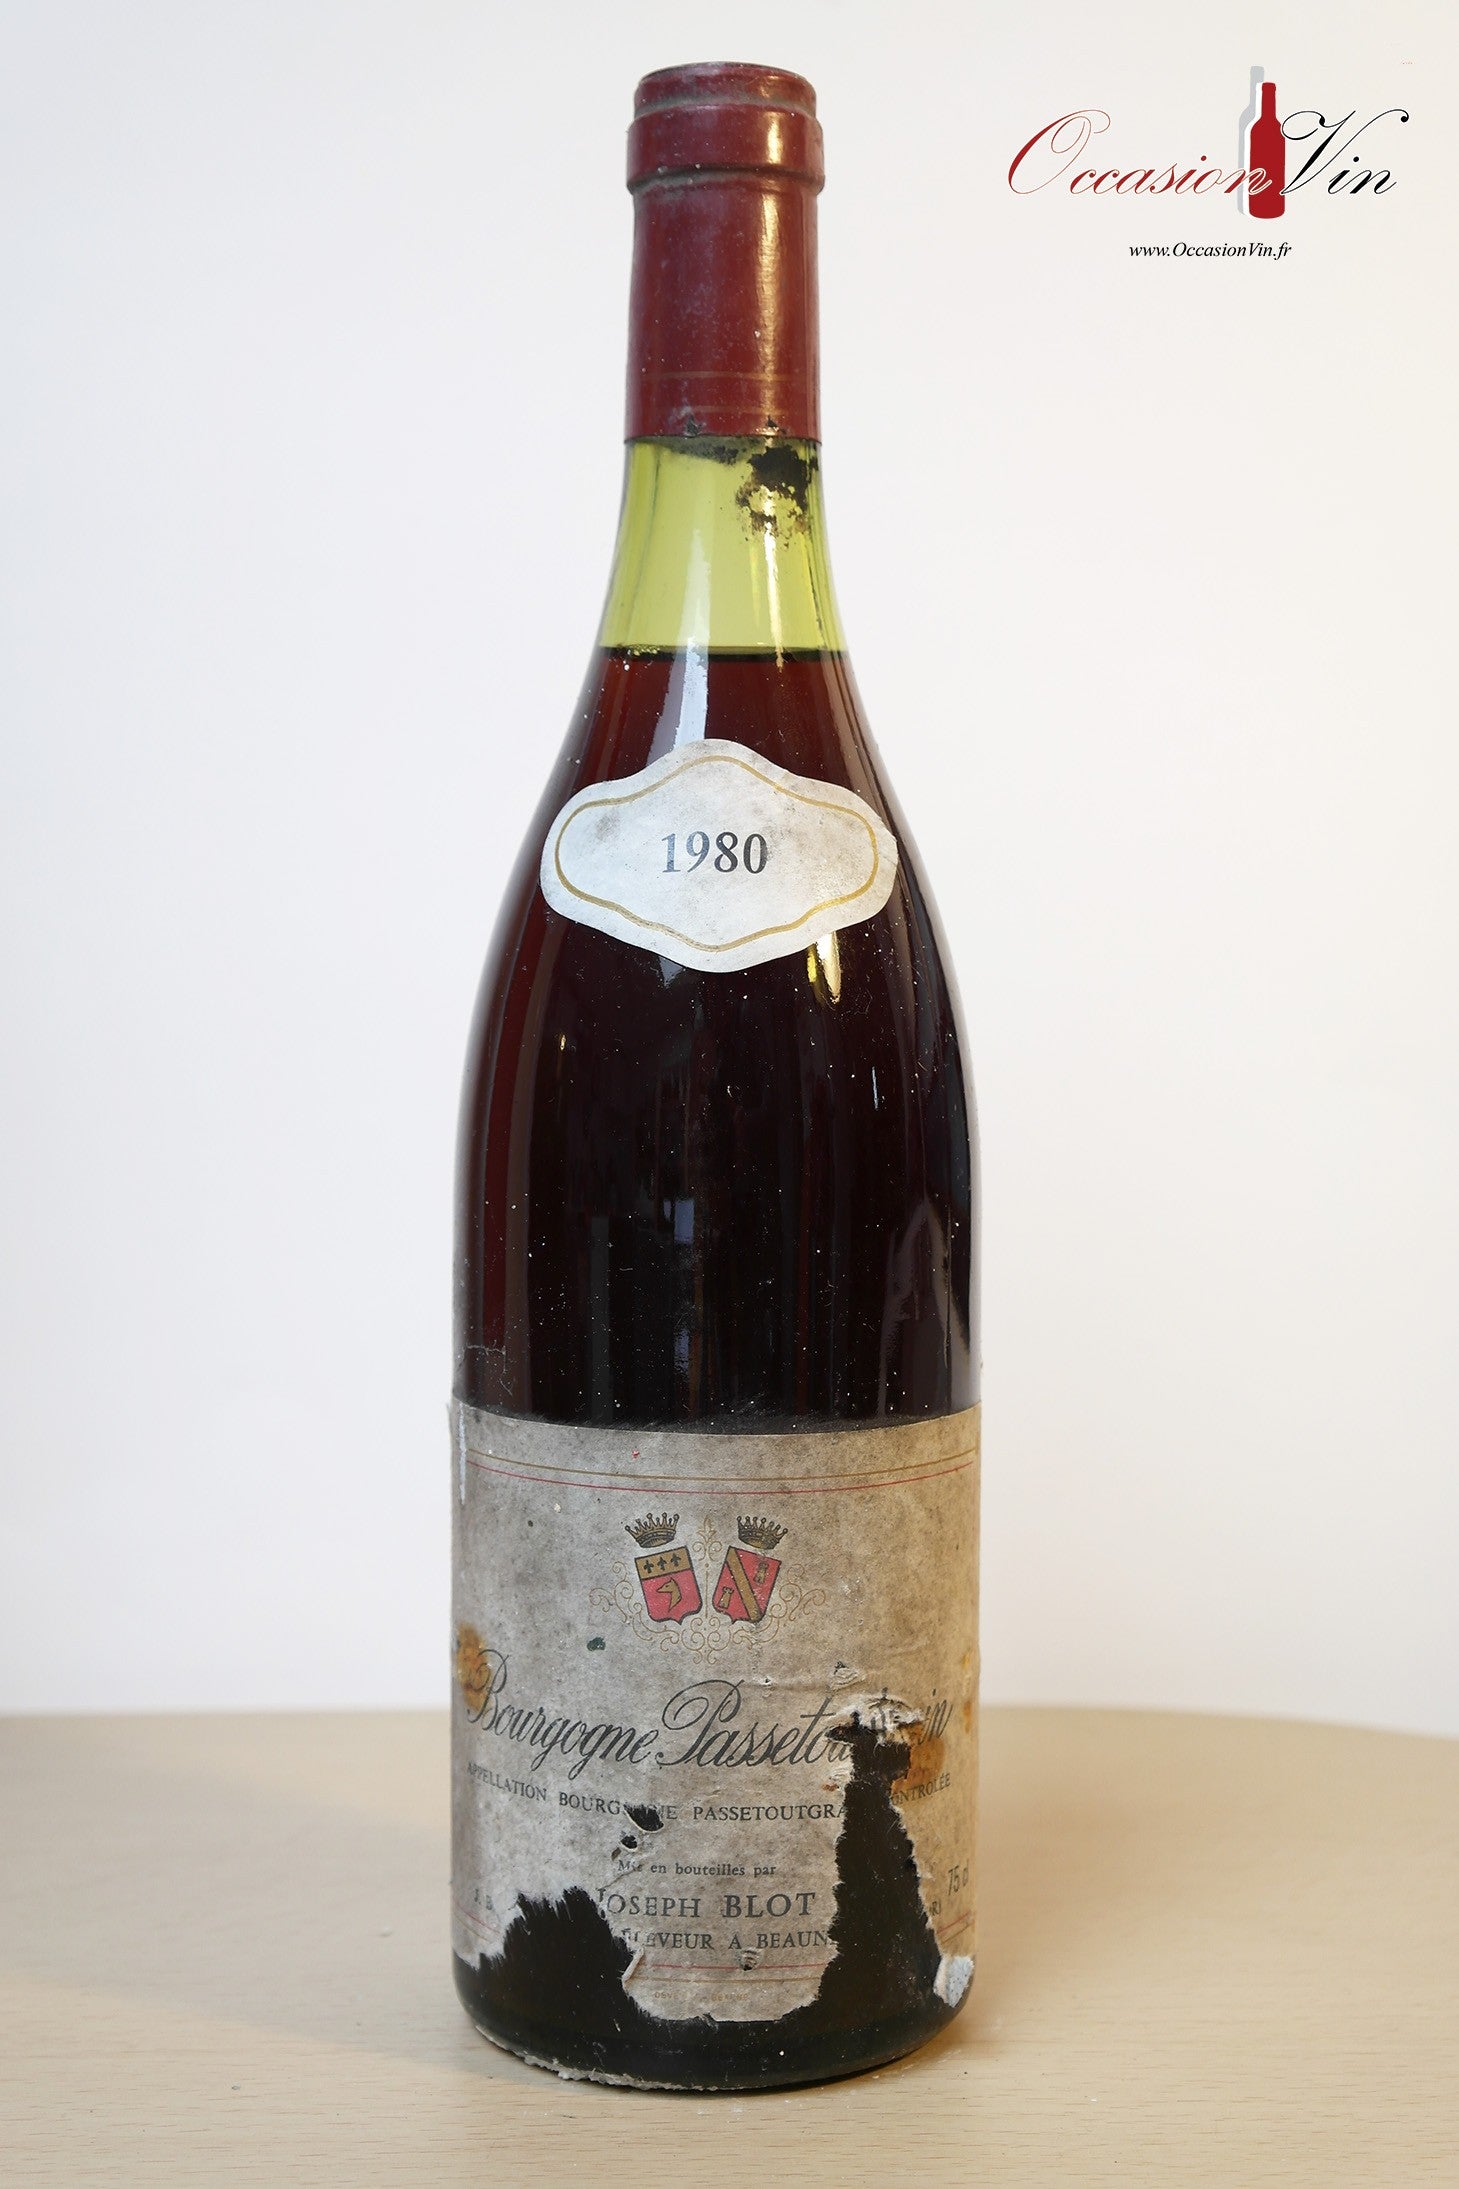 Bourgogne Joseph Blot Vin 1980